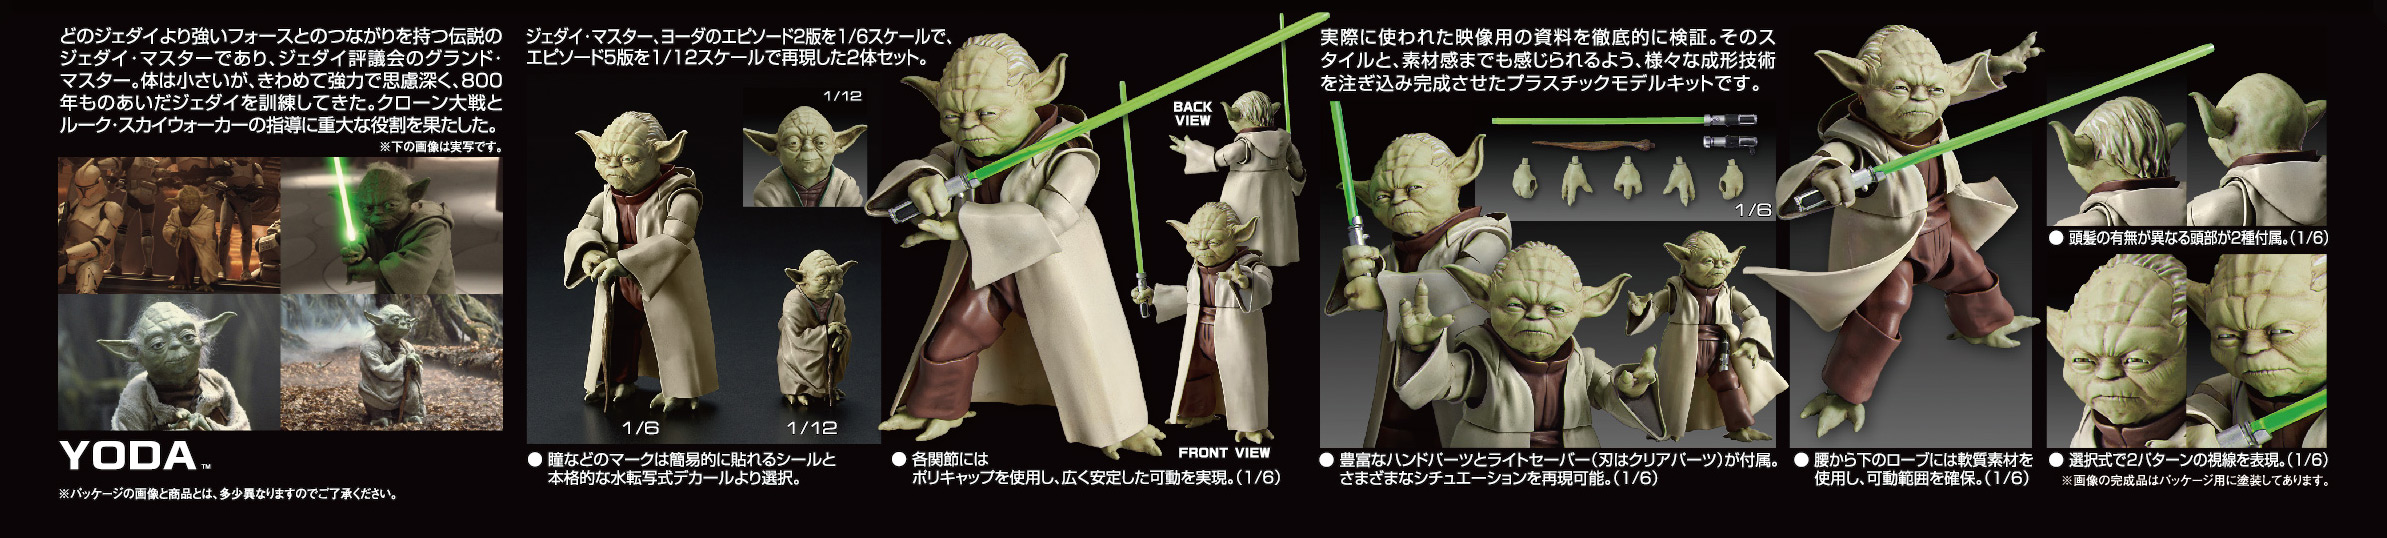 Bandai Star Wars Yoda 1//6 Scale Building Kit 4549660144731